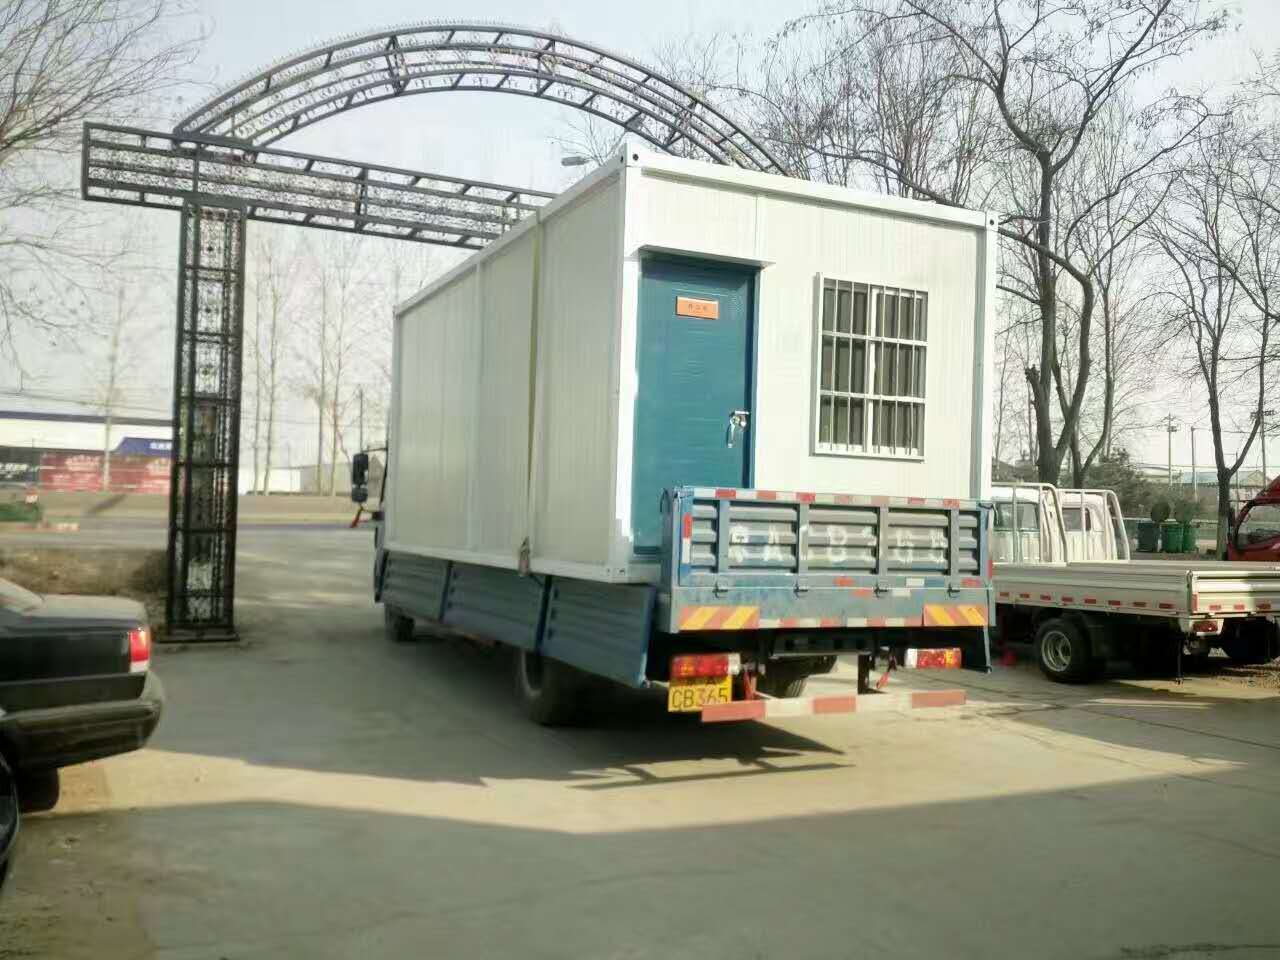 北京住人集装箱活动房租售优质的服务、低廉的价格